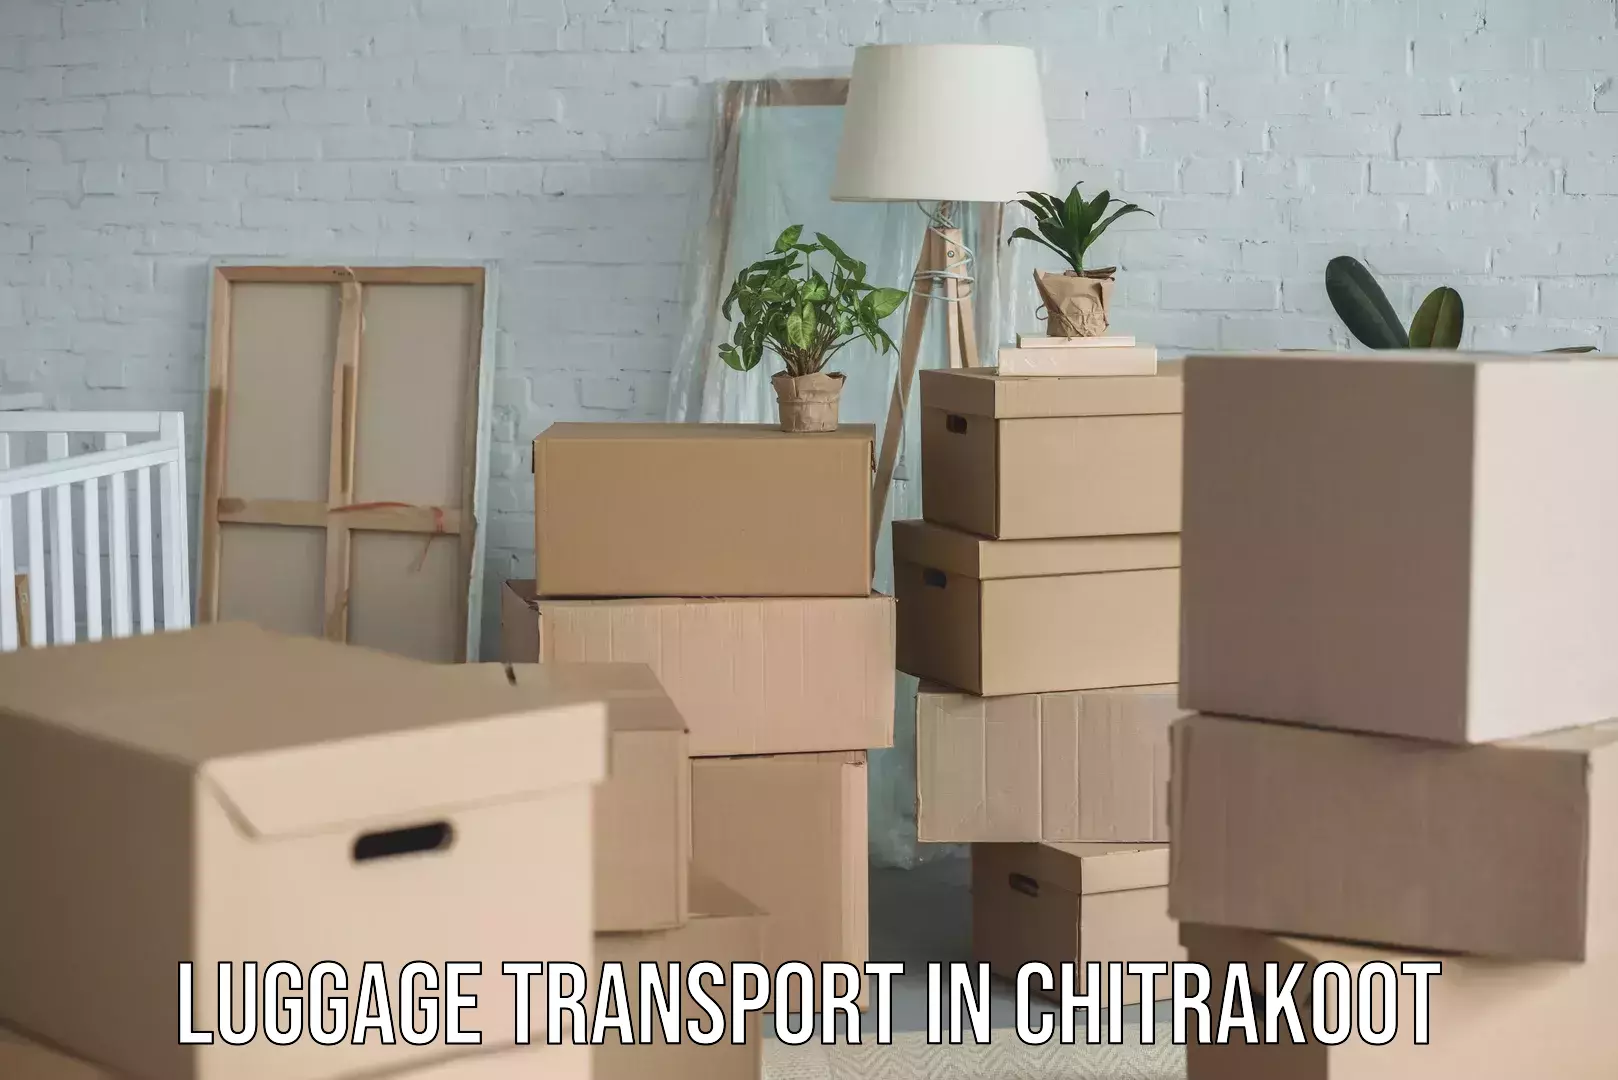 Baggage transport innovation in Chitrakoot